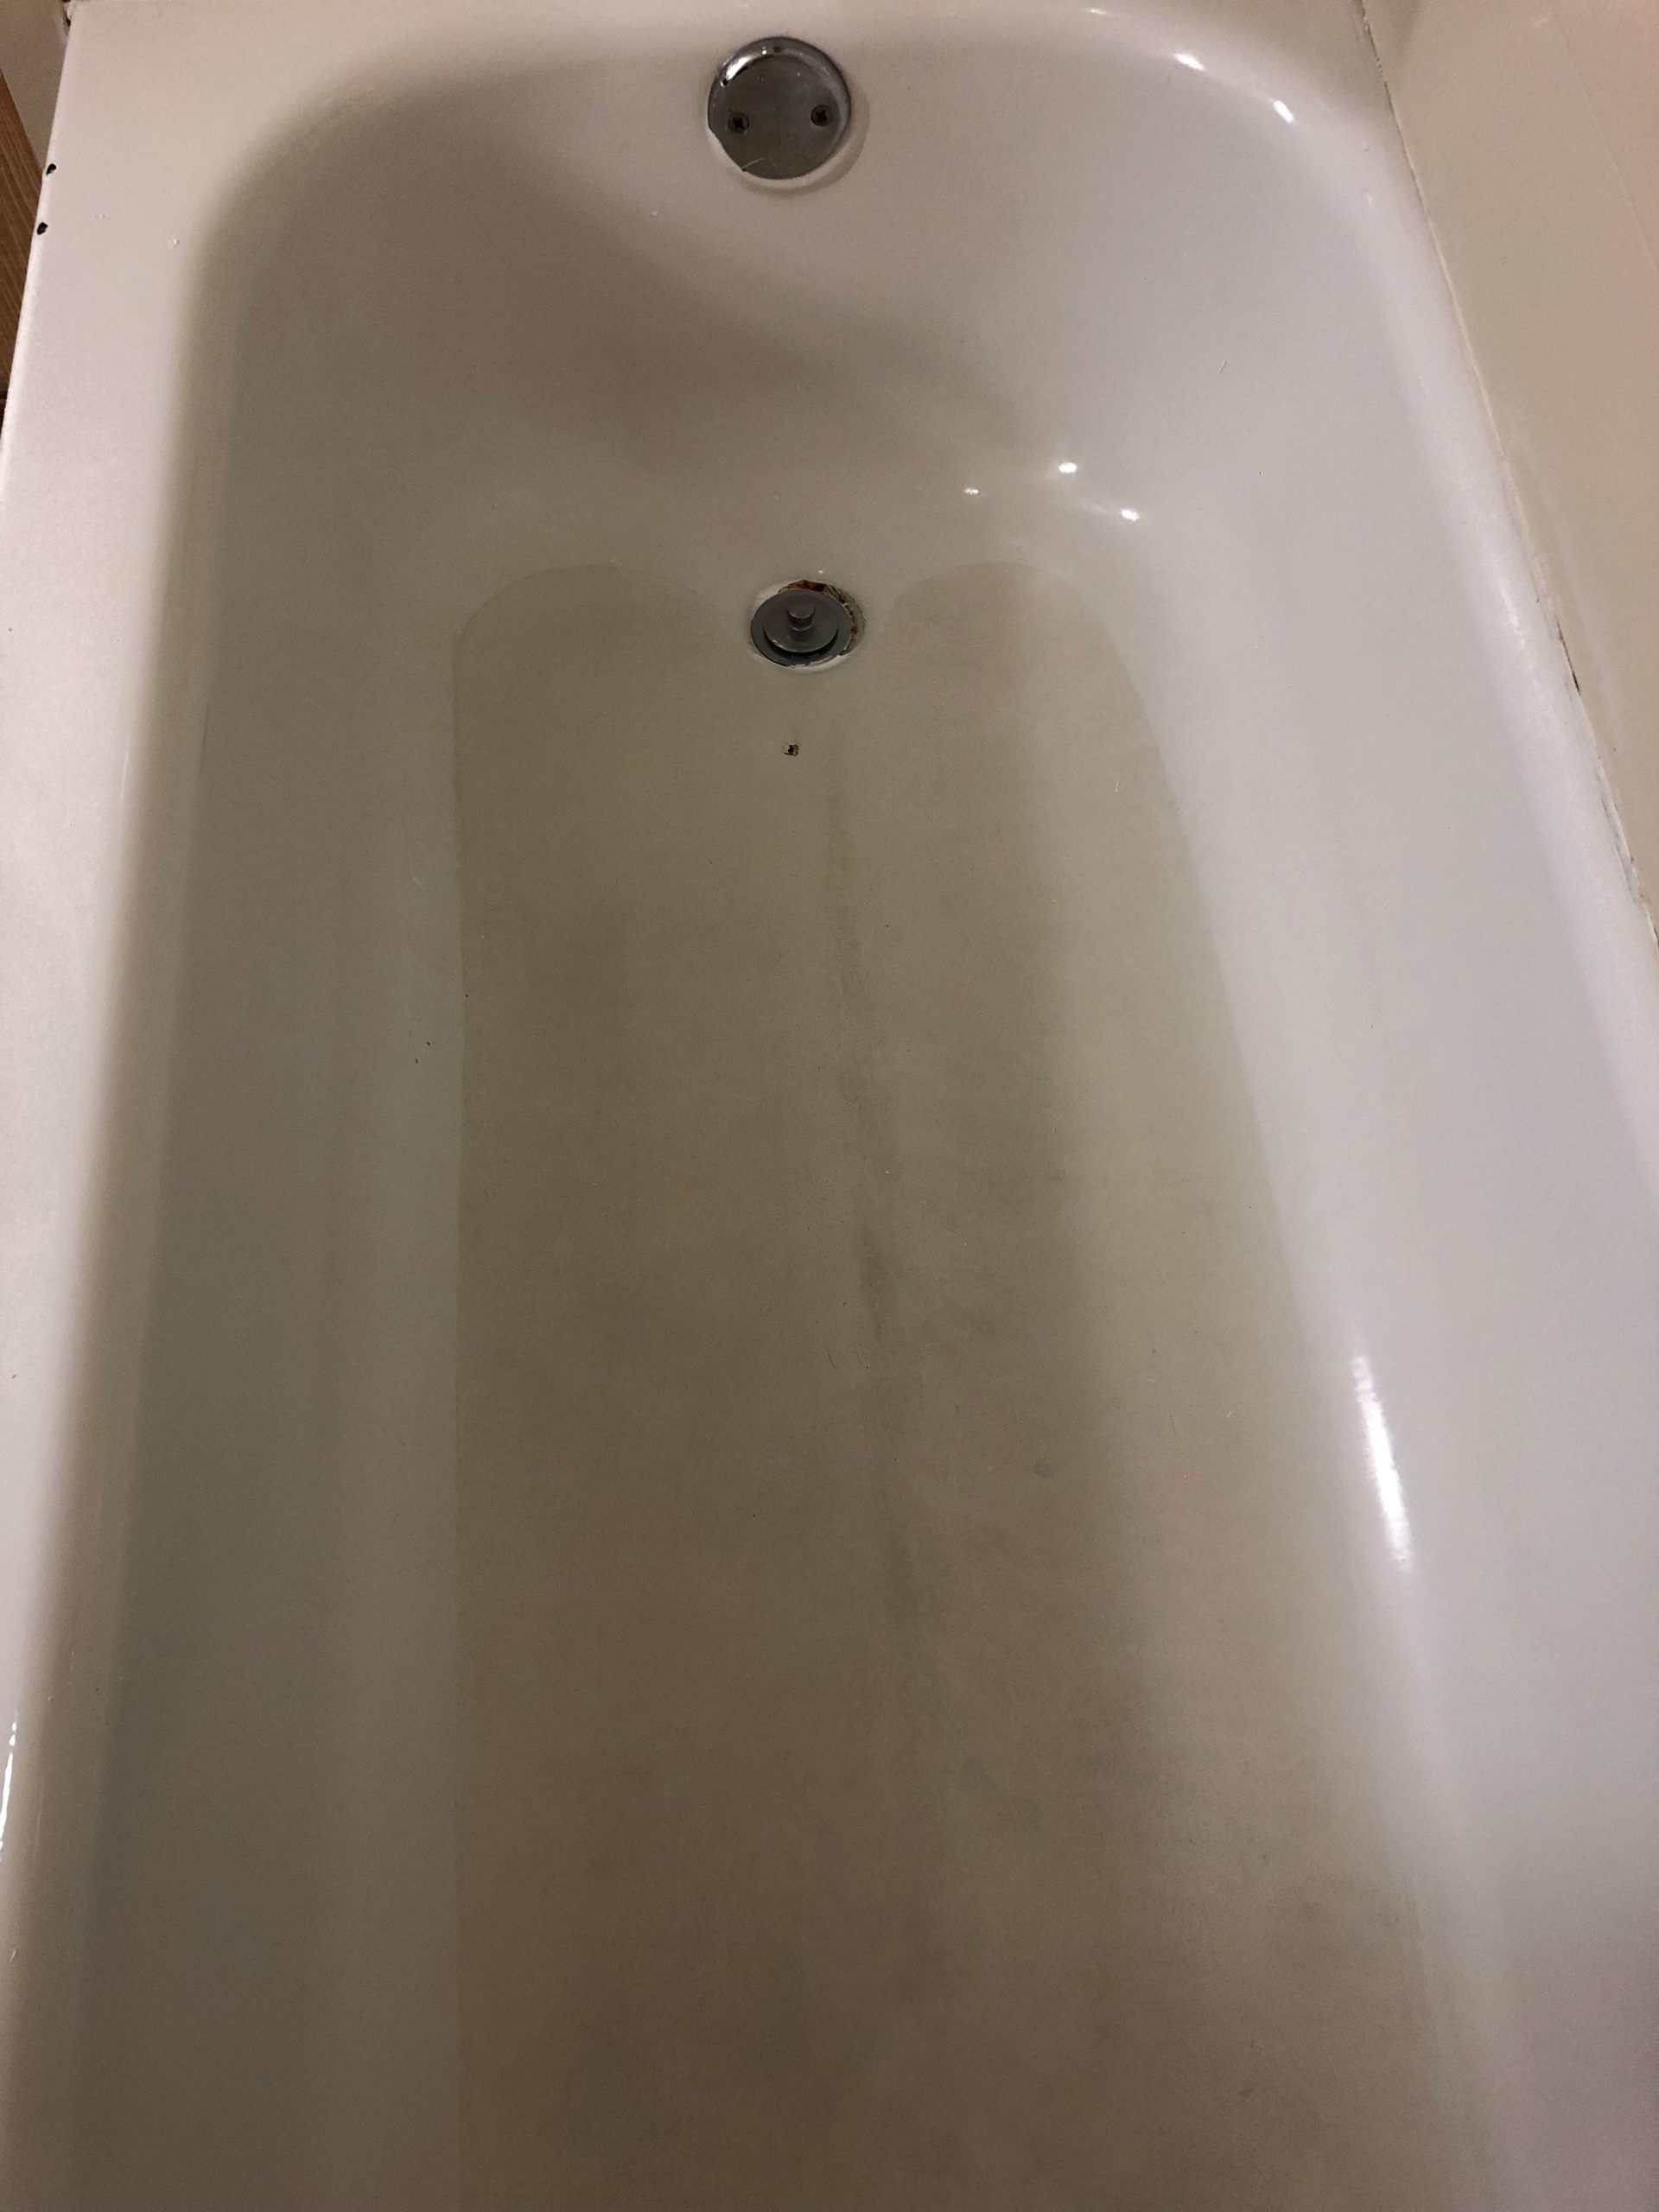 worn bathtub before